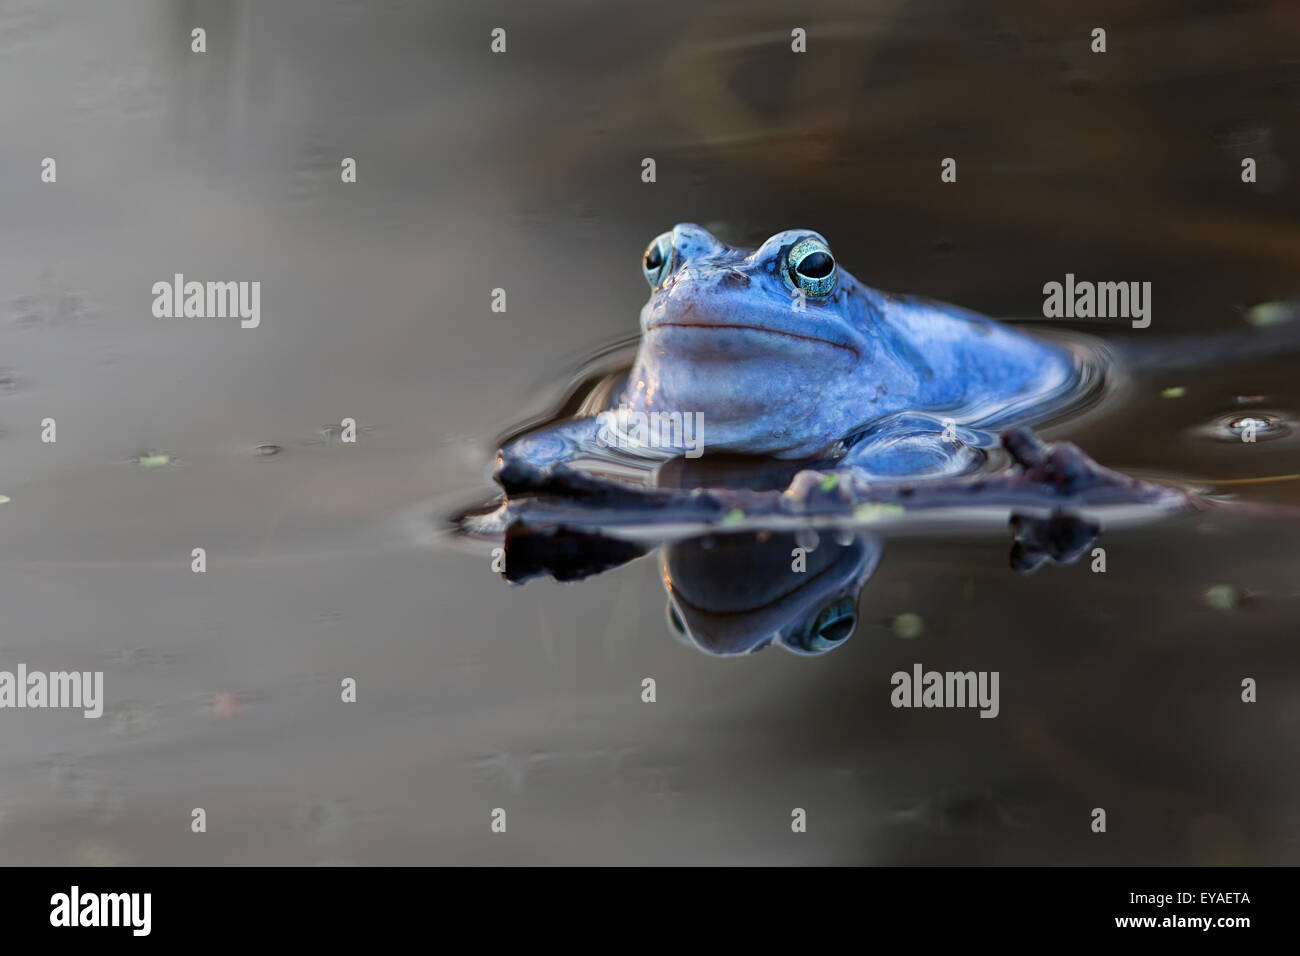 Moor frog in the wild Stock Photo